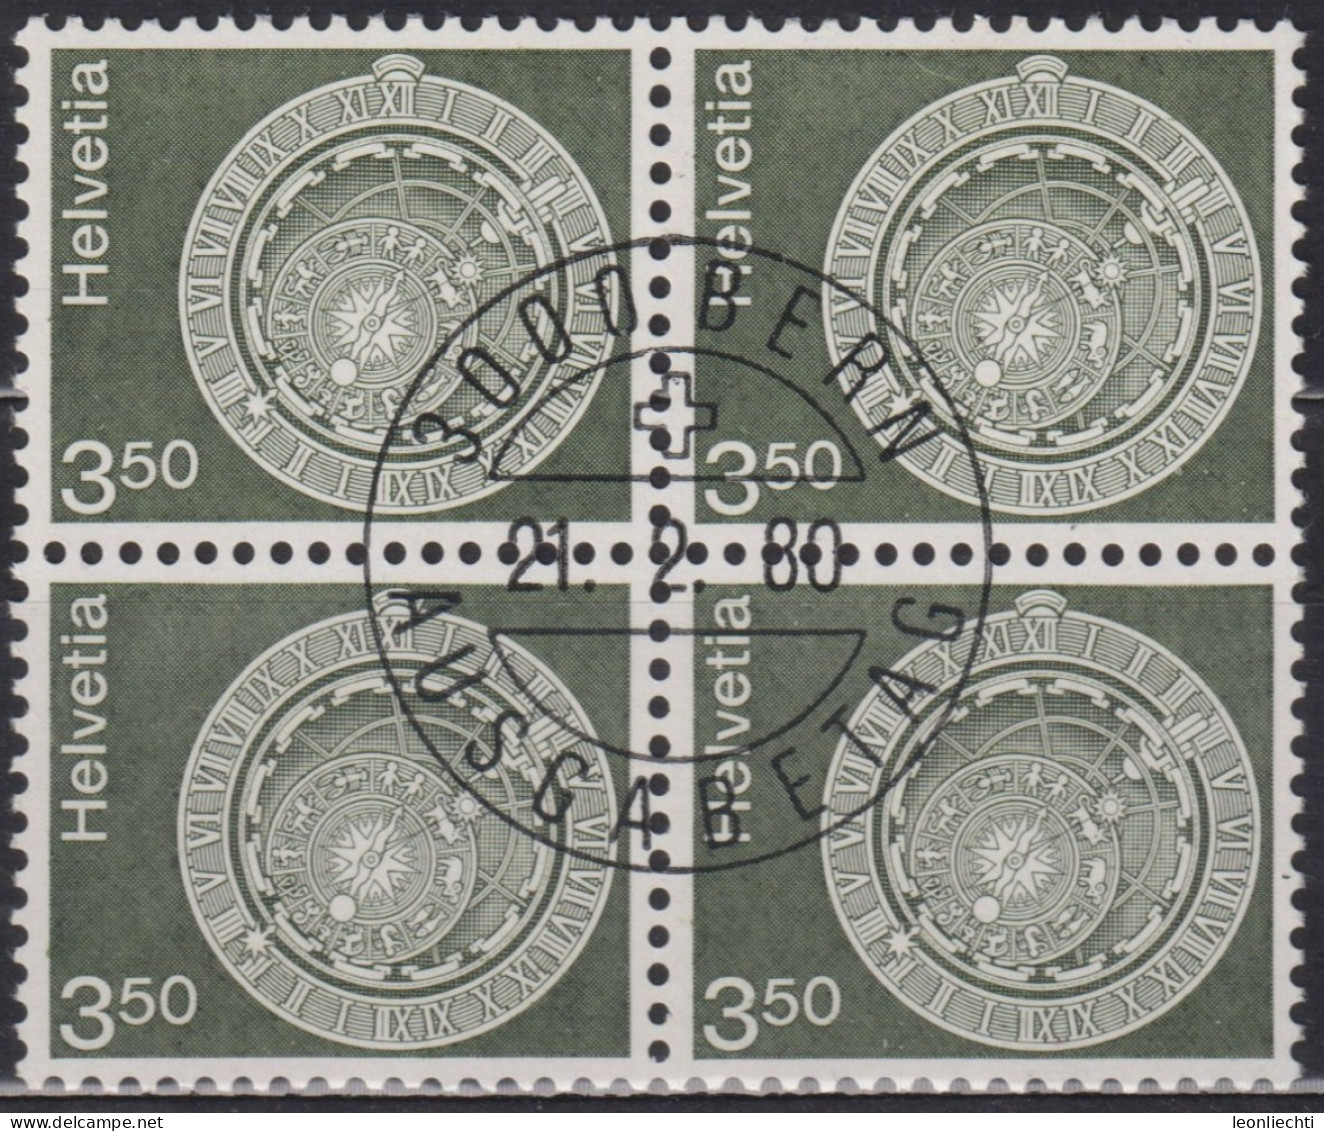 1980 Schweiz ET ° Zum: CH 613, MI: CH 1169, Astronomische Uhr, Bern, - Horloges